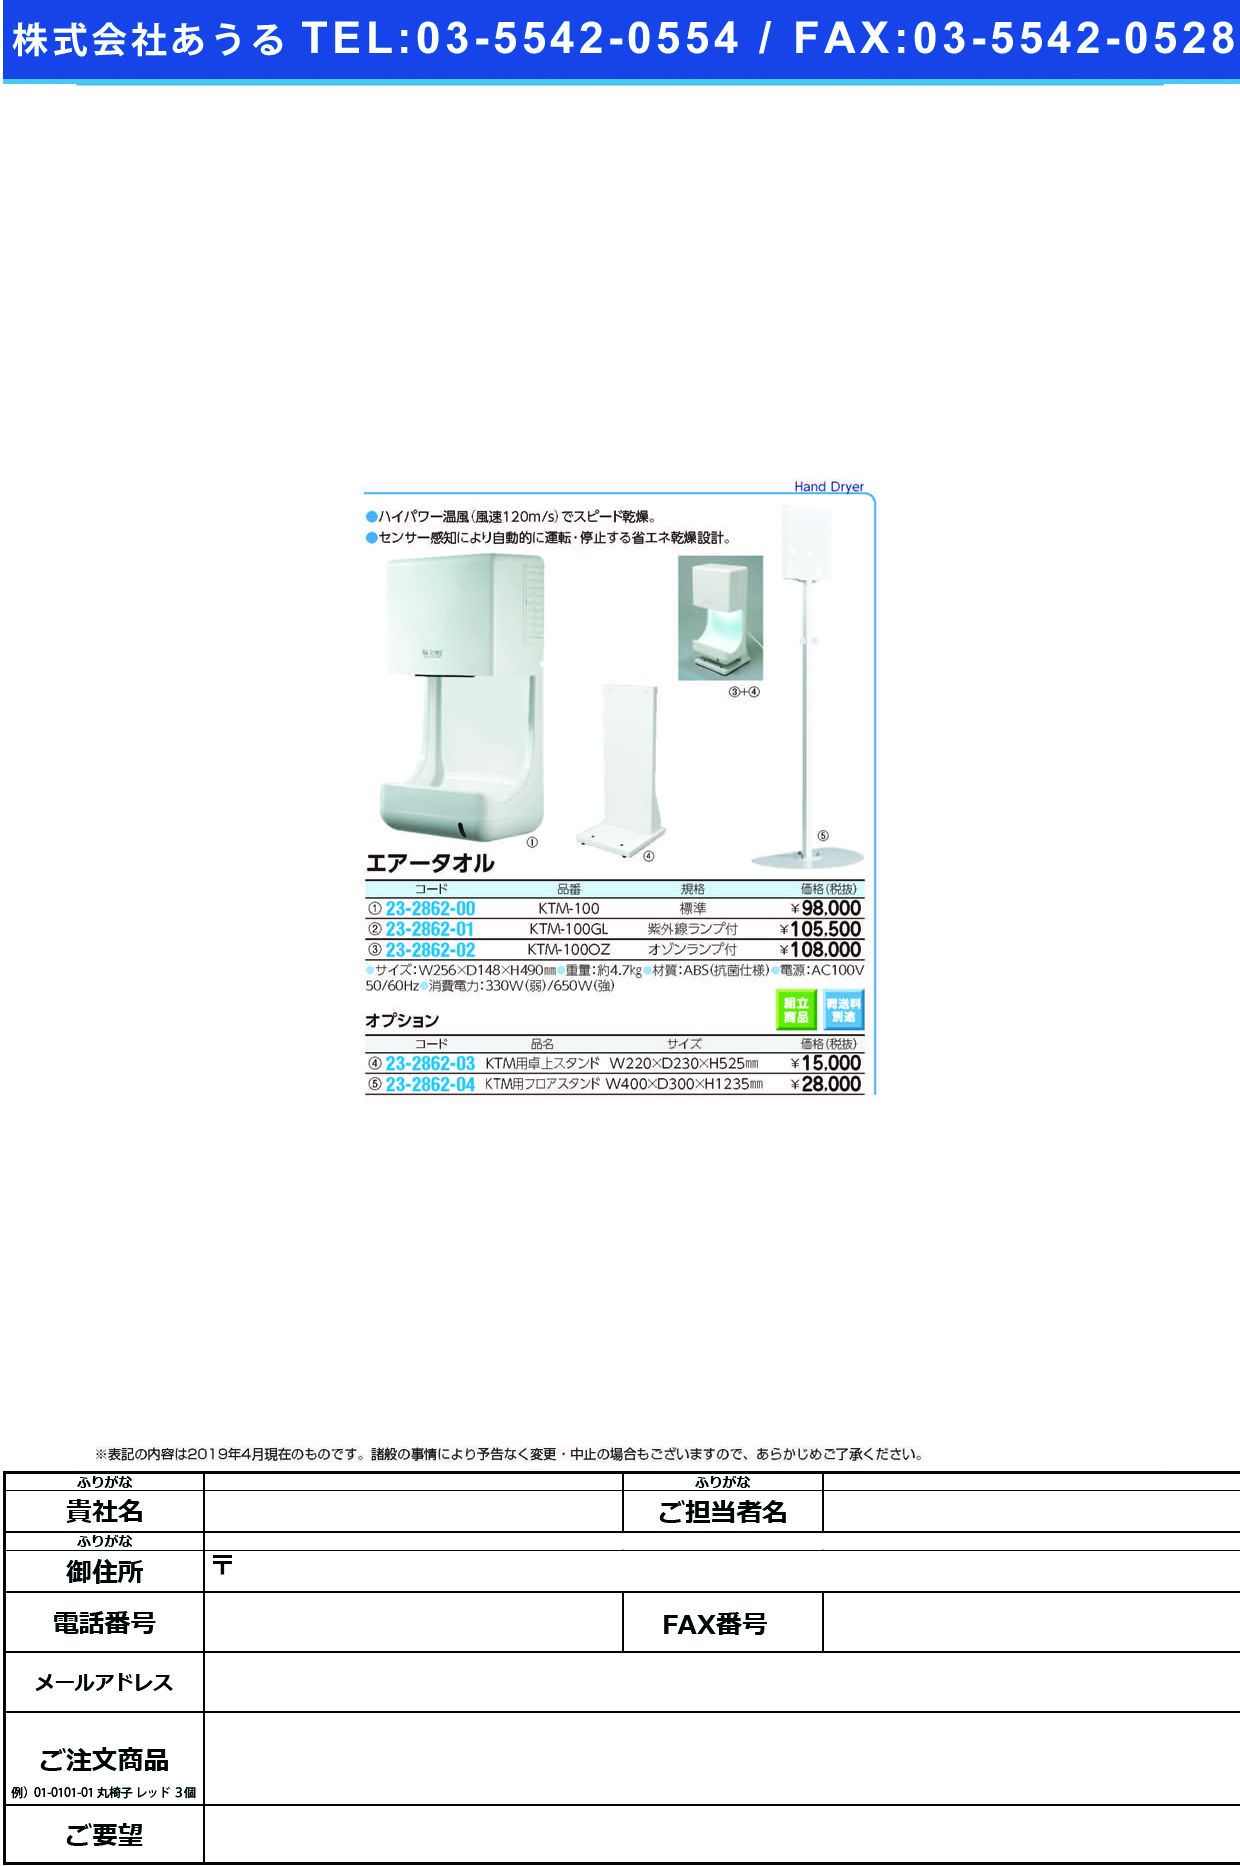 (23-2862-00)エアータオル KTM-100(AC100V) ｴｱｰﾀｵﾙ【1台単位】【2019年カタログ商品】